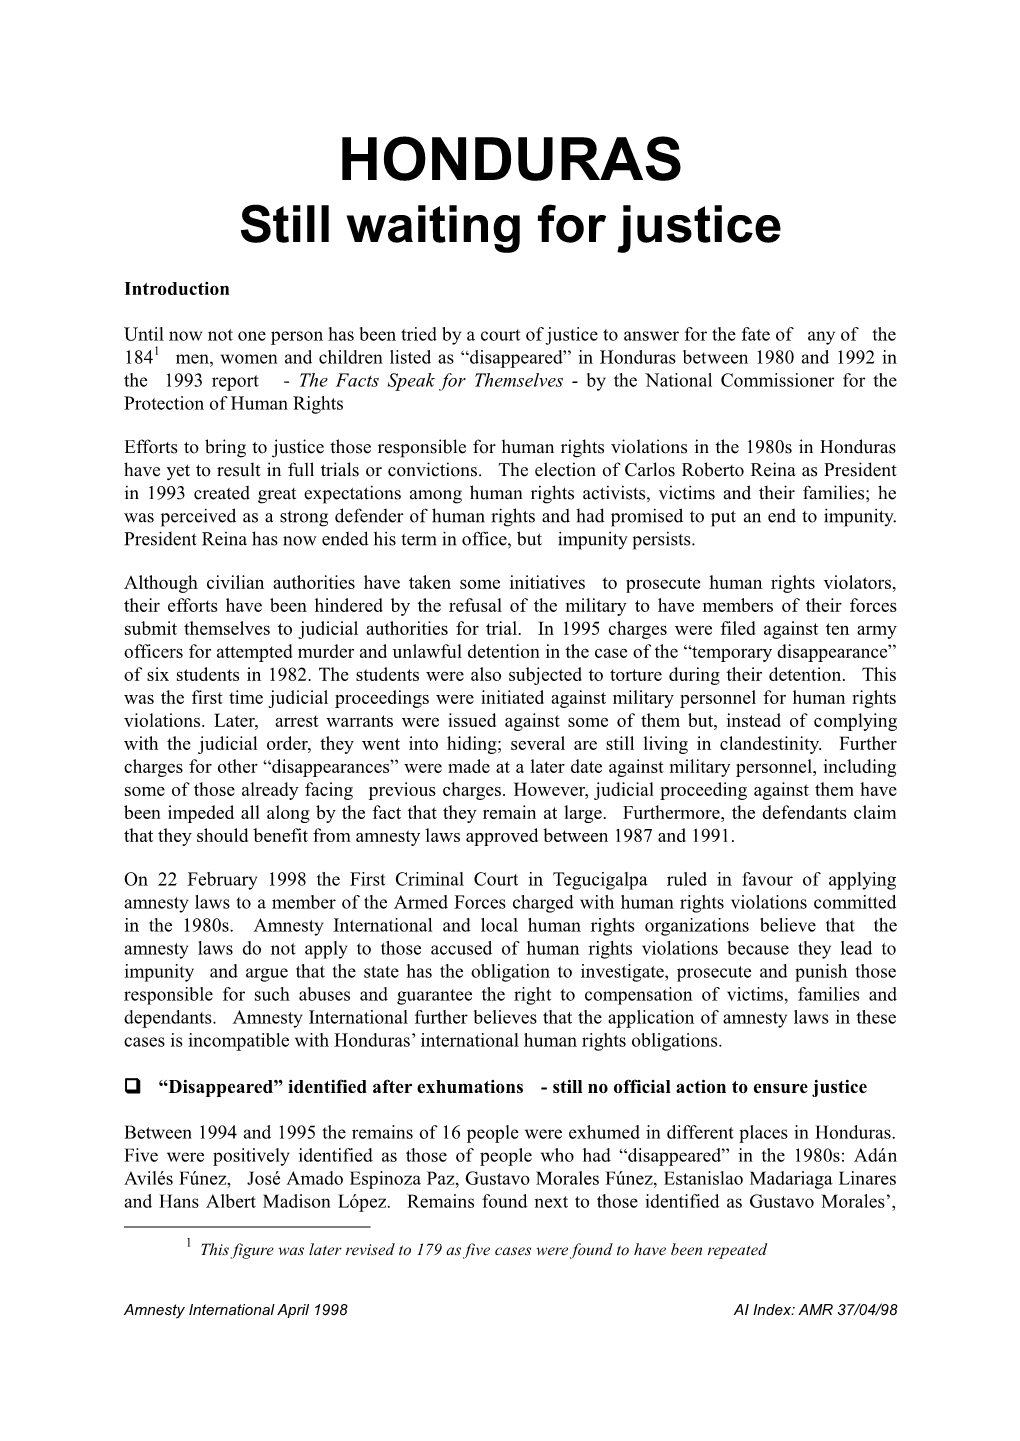 HONDURAS Still Waiting for Justice